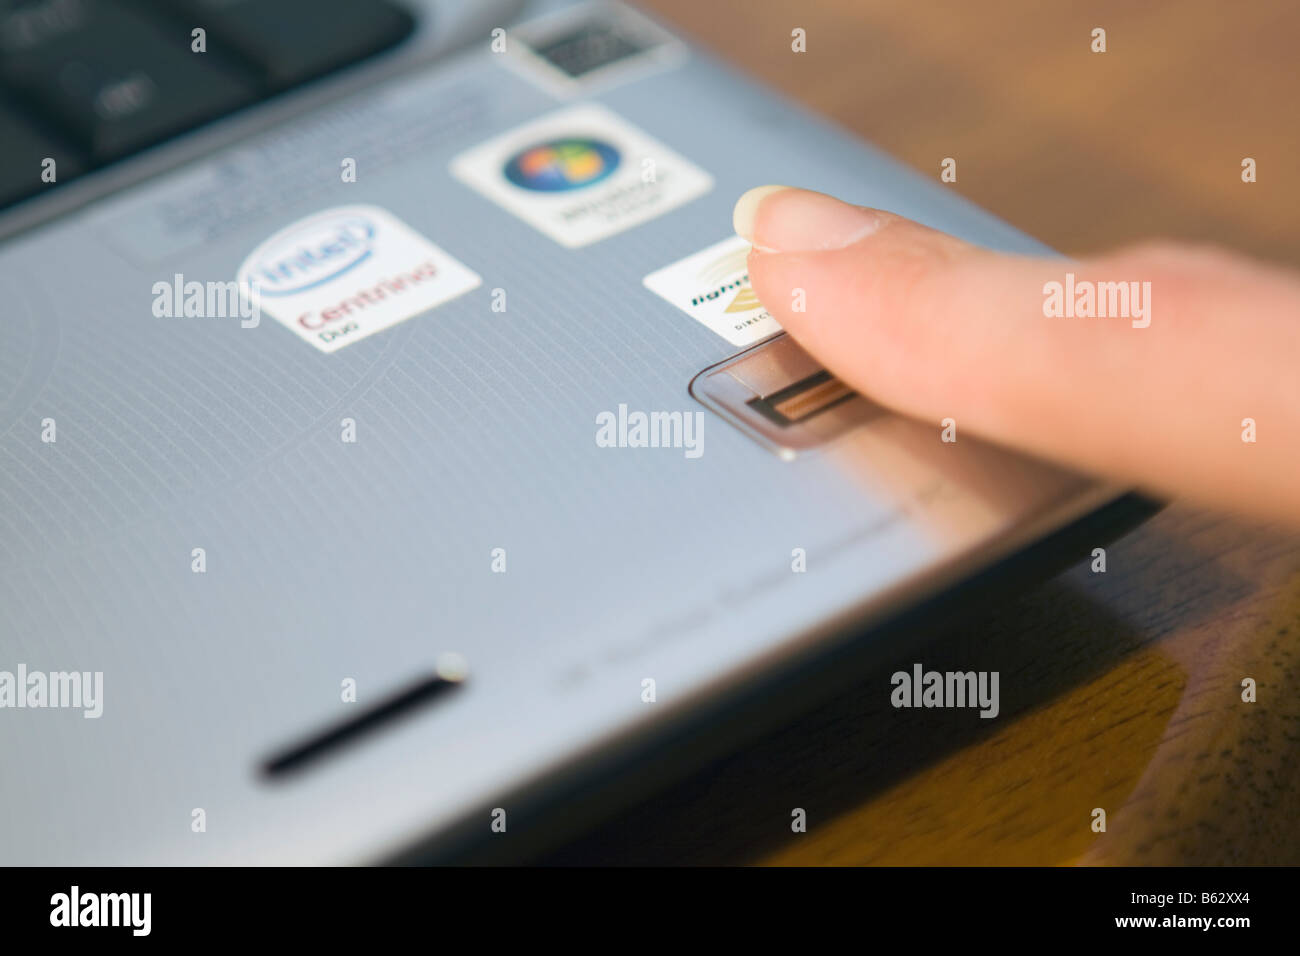 Anmelden an einem Notebook-PC durch Streichen sie Frau finger über einen biometrischen Fingerabdruckleser. Stockfoto